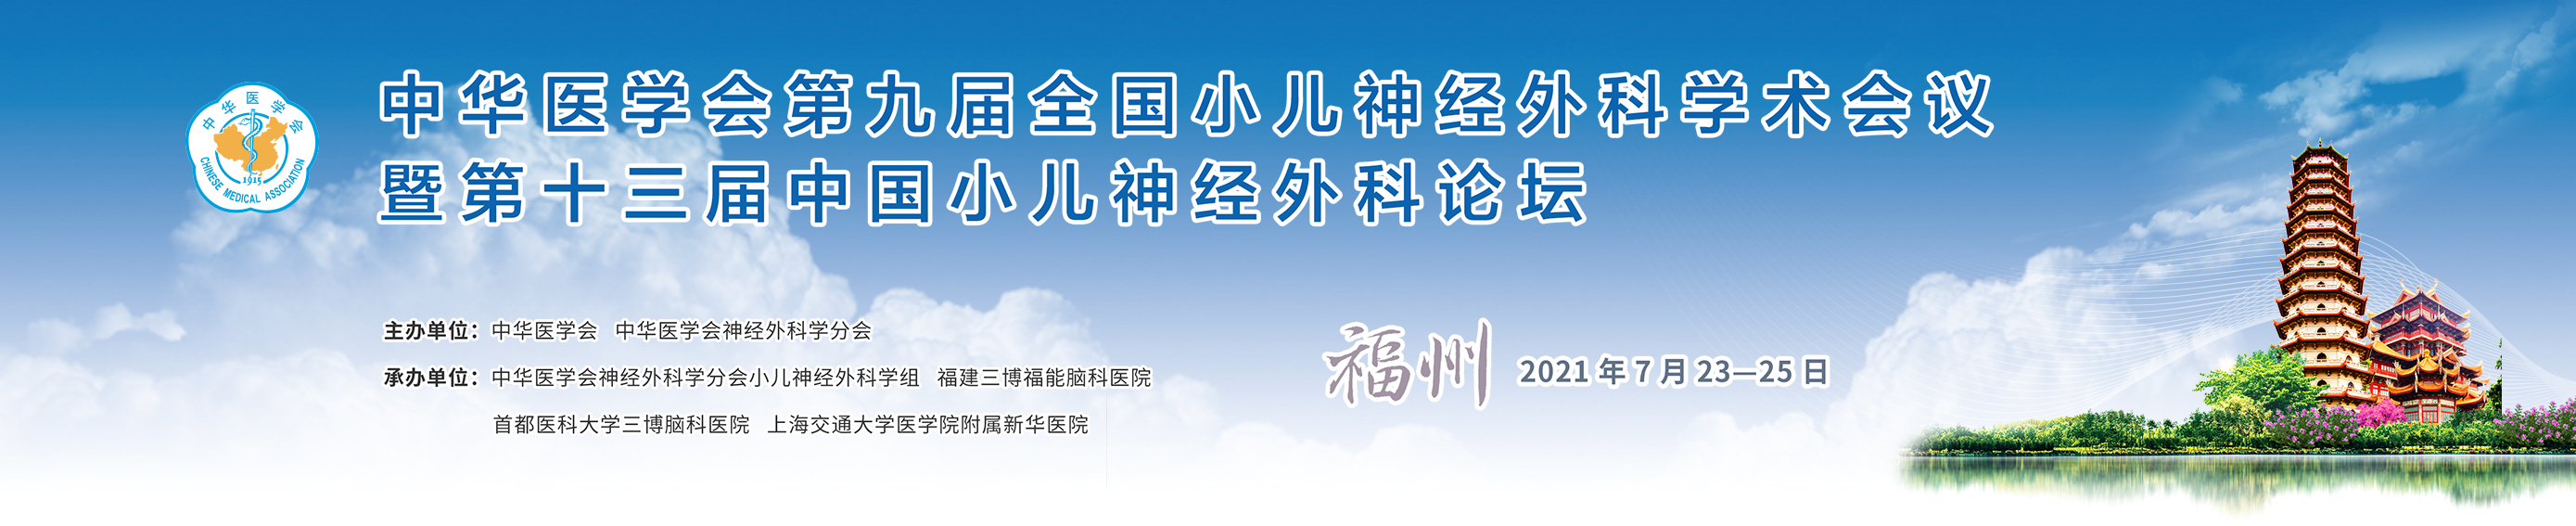 中华医学会第九届全国小儿神经外科学术会议